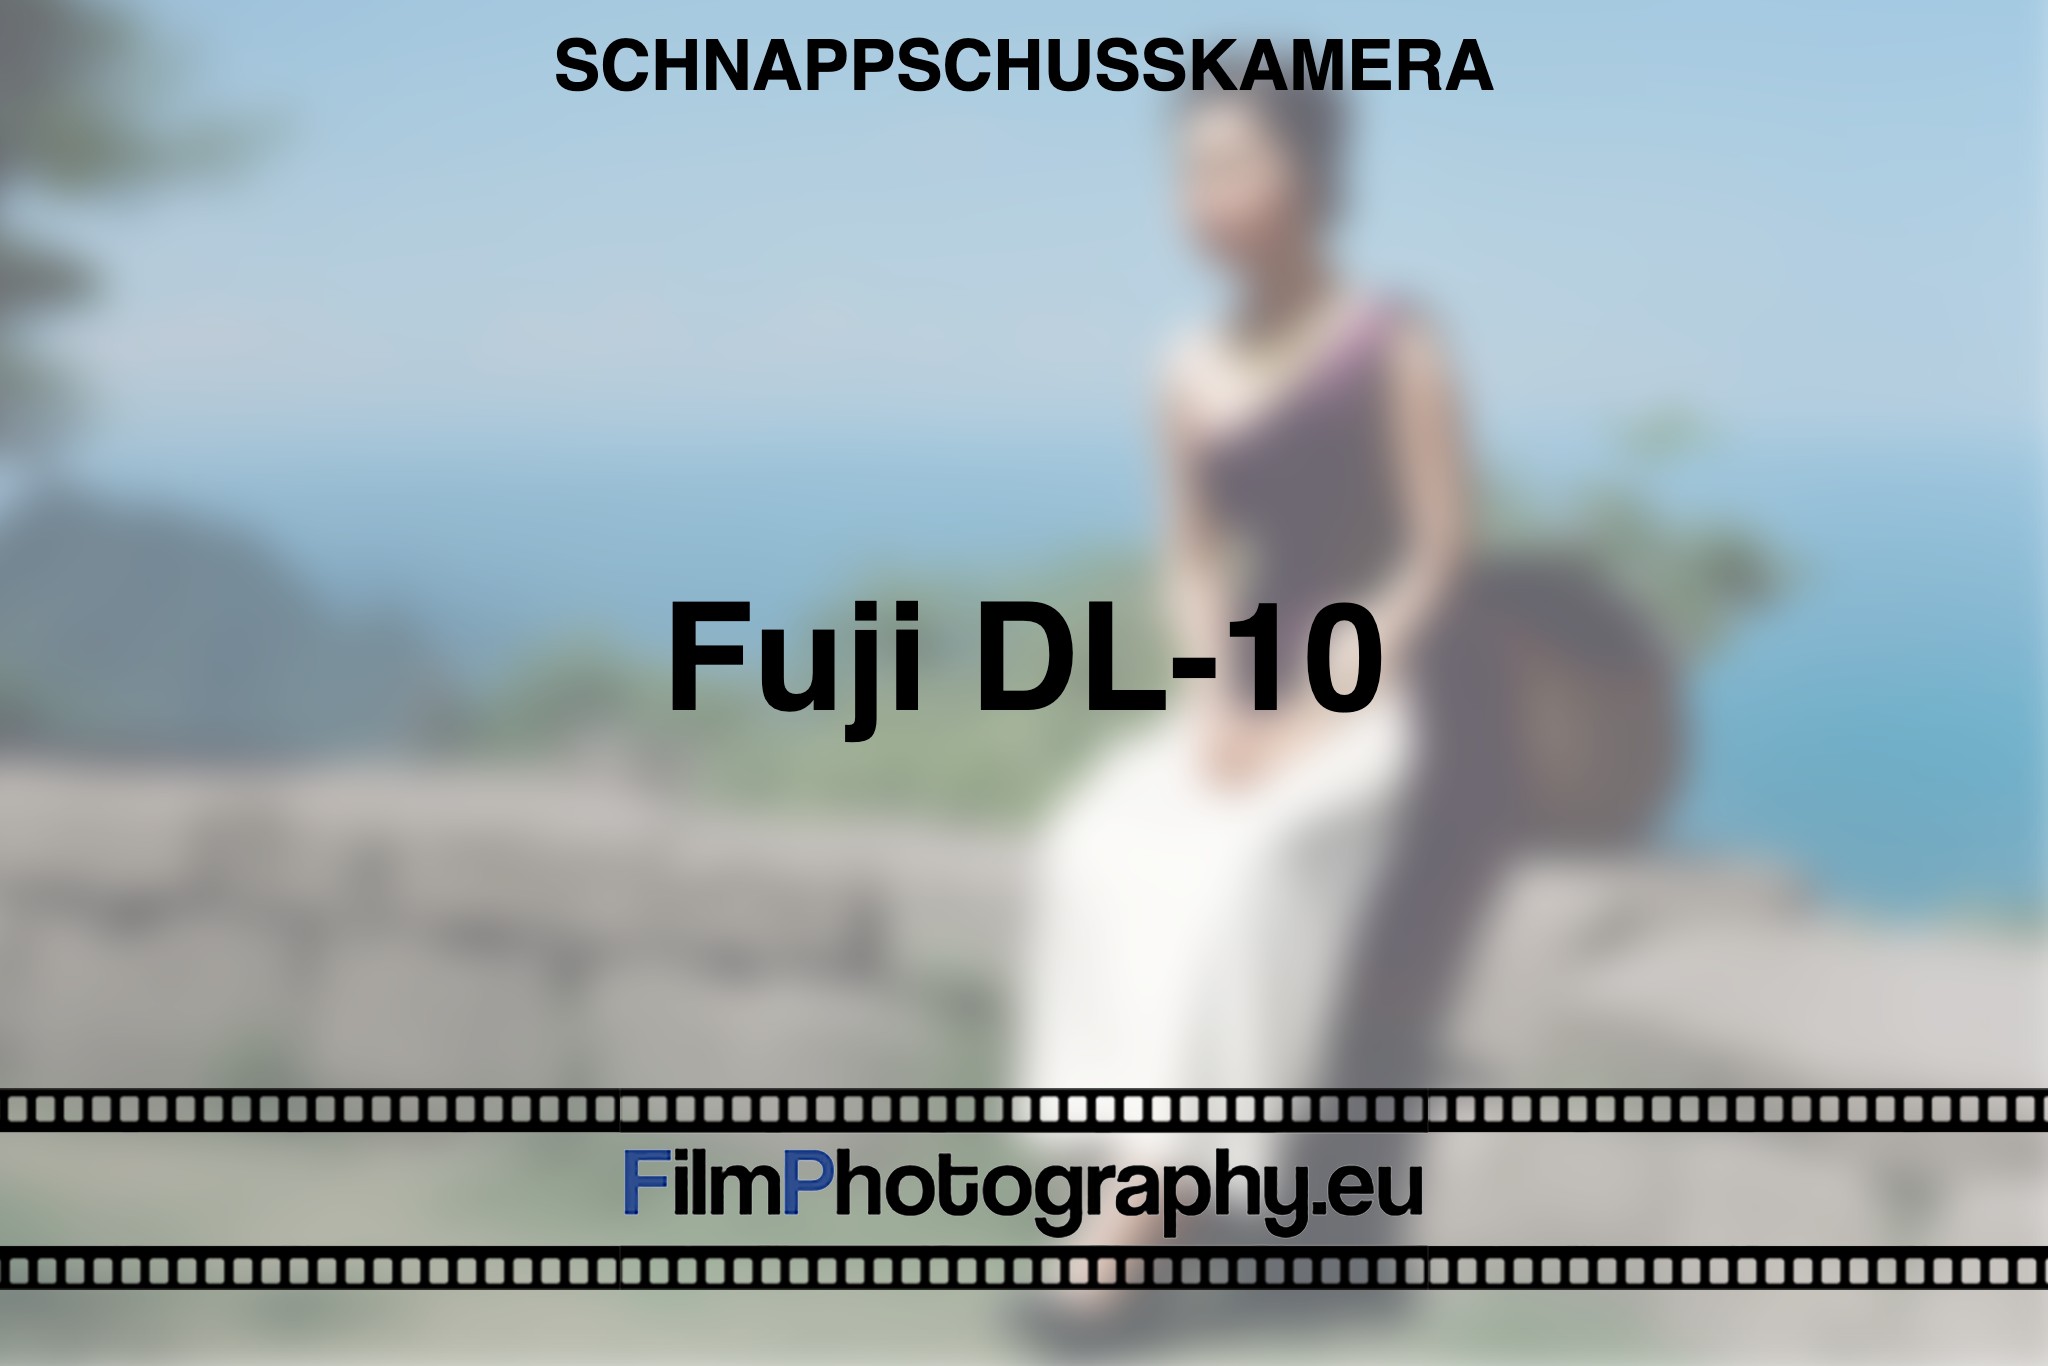 fuji-dl-10-schnappschusskamera-bnv